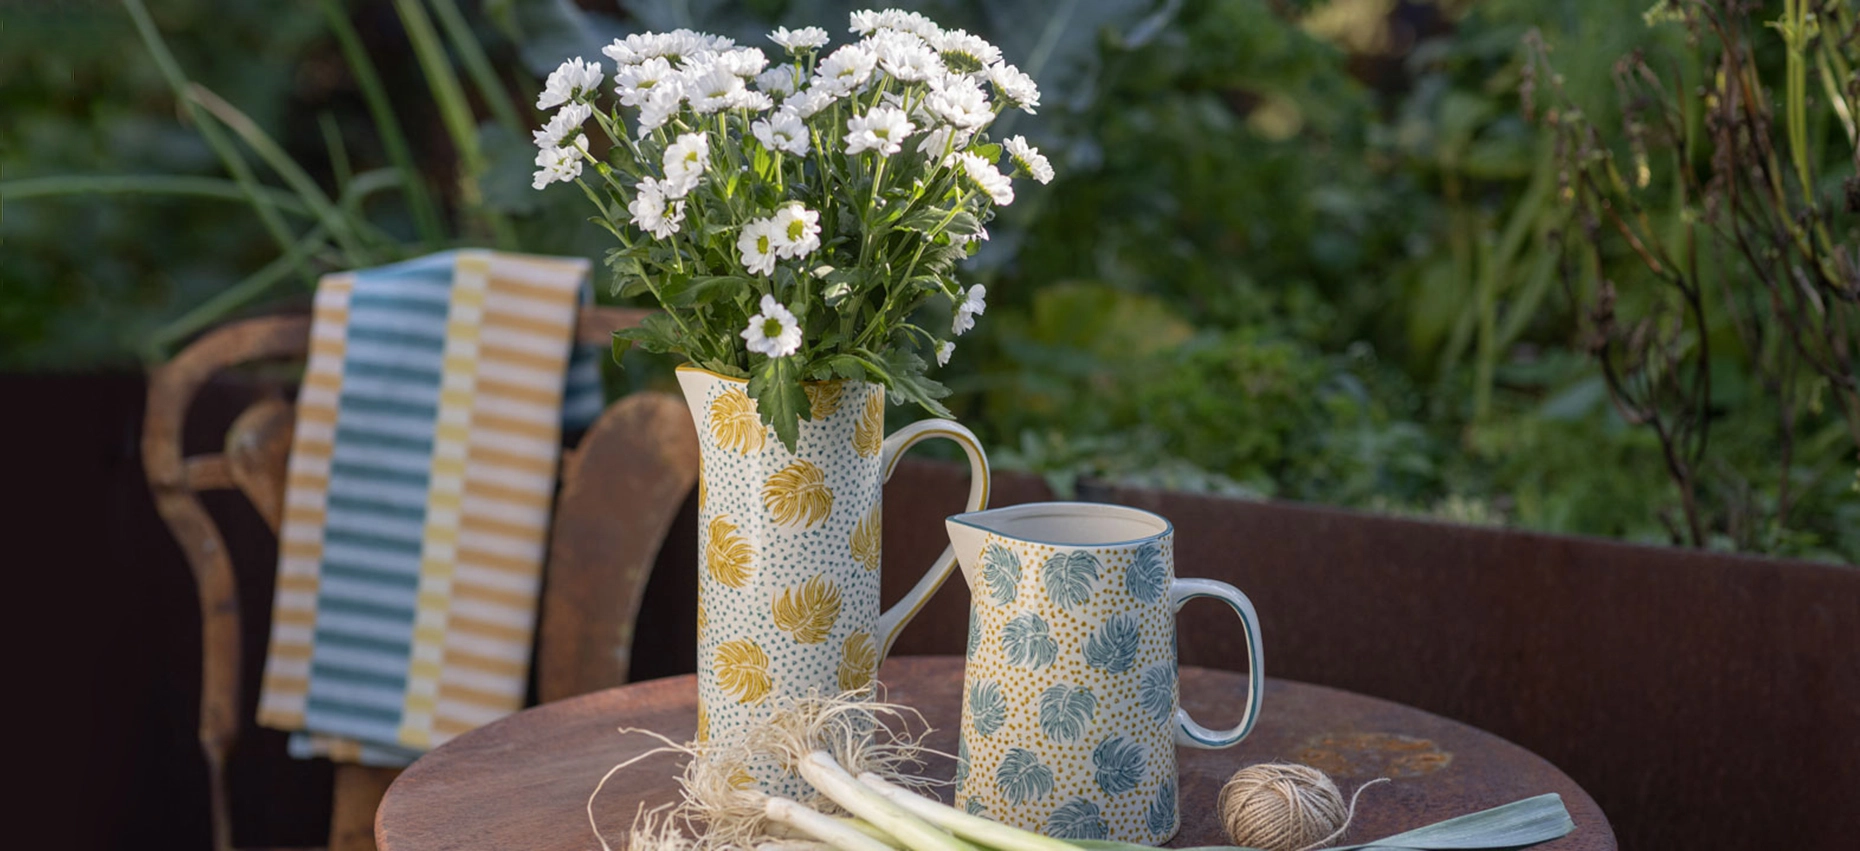 Een vaas gevuld met bloemen en een karaf met water staan op een tuintafel